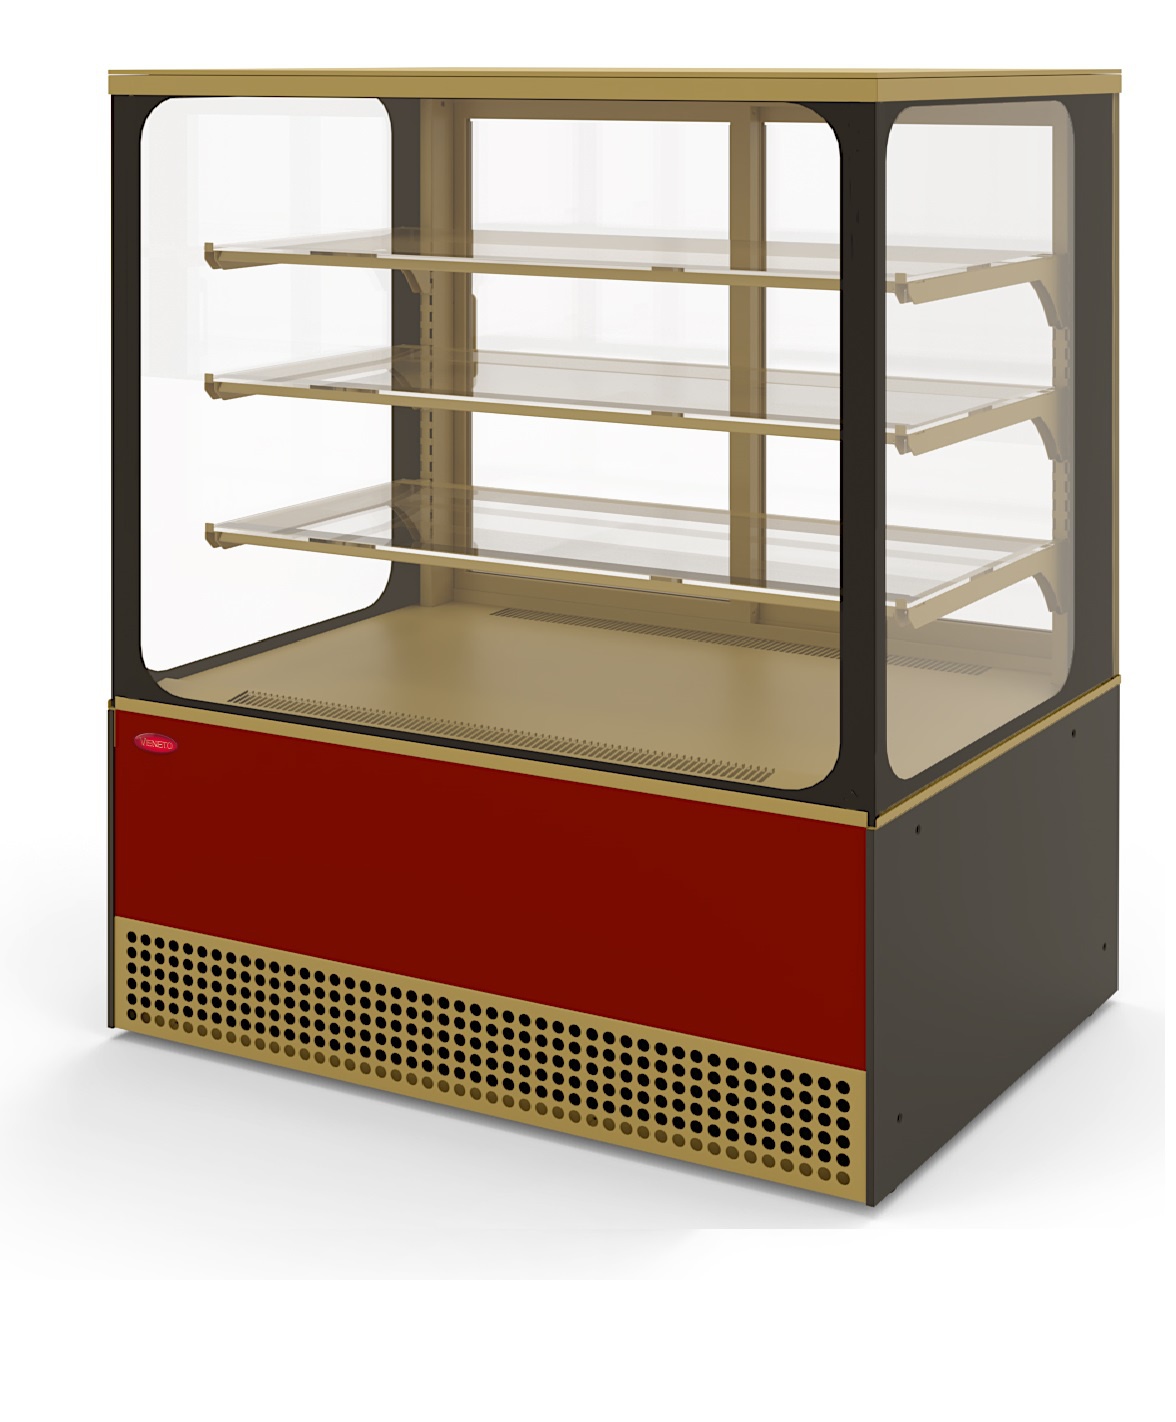 Витрина холодильная кондитерская Veneto VS-1,3 Cube крашенная